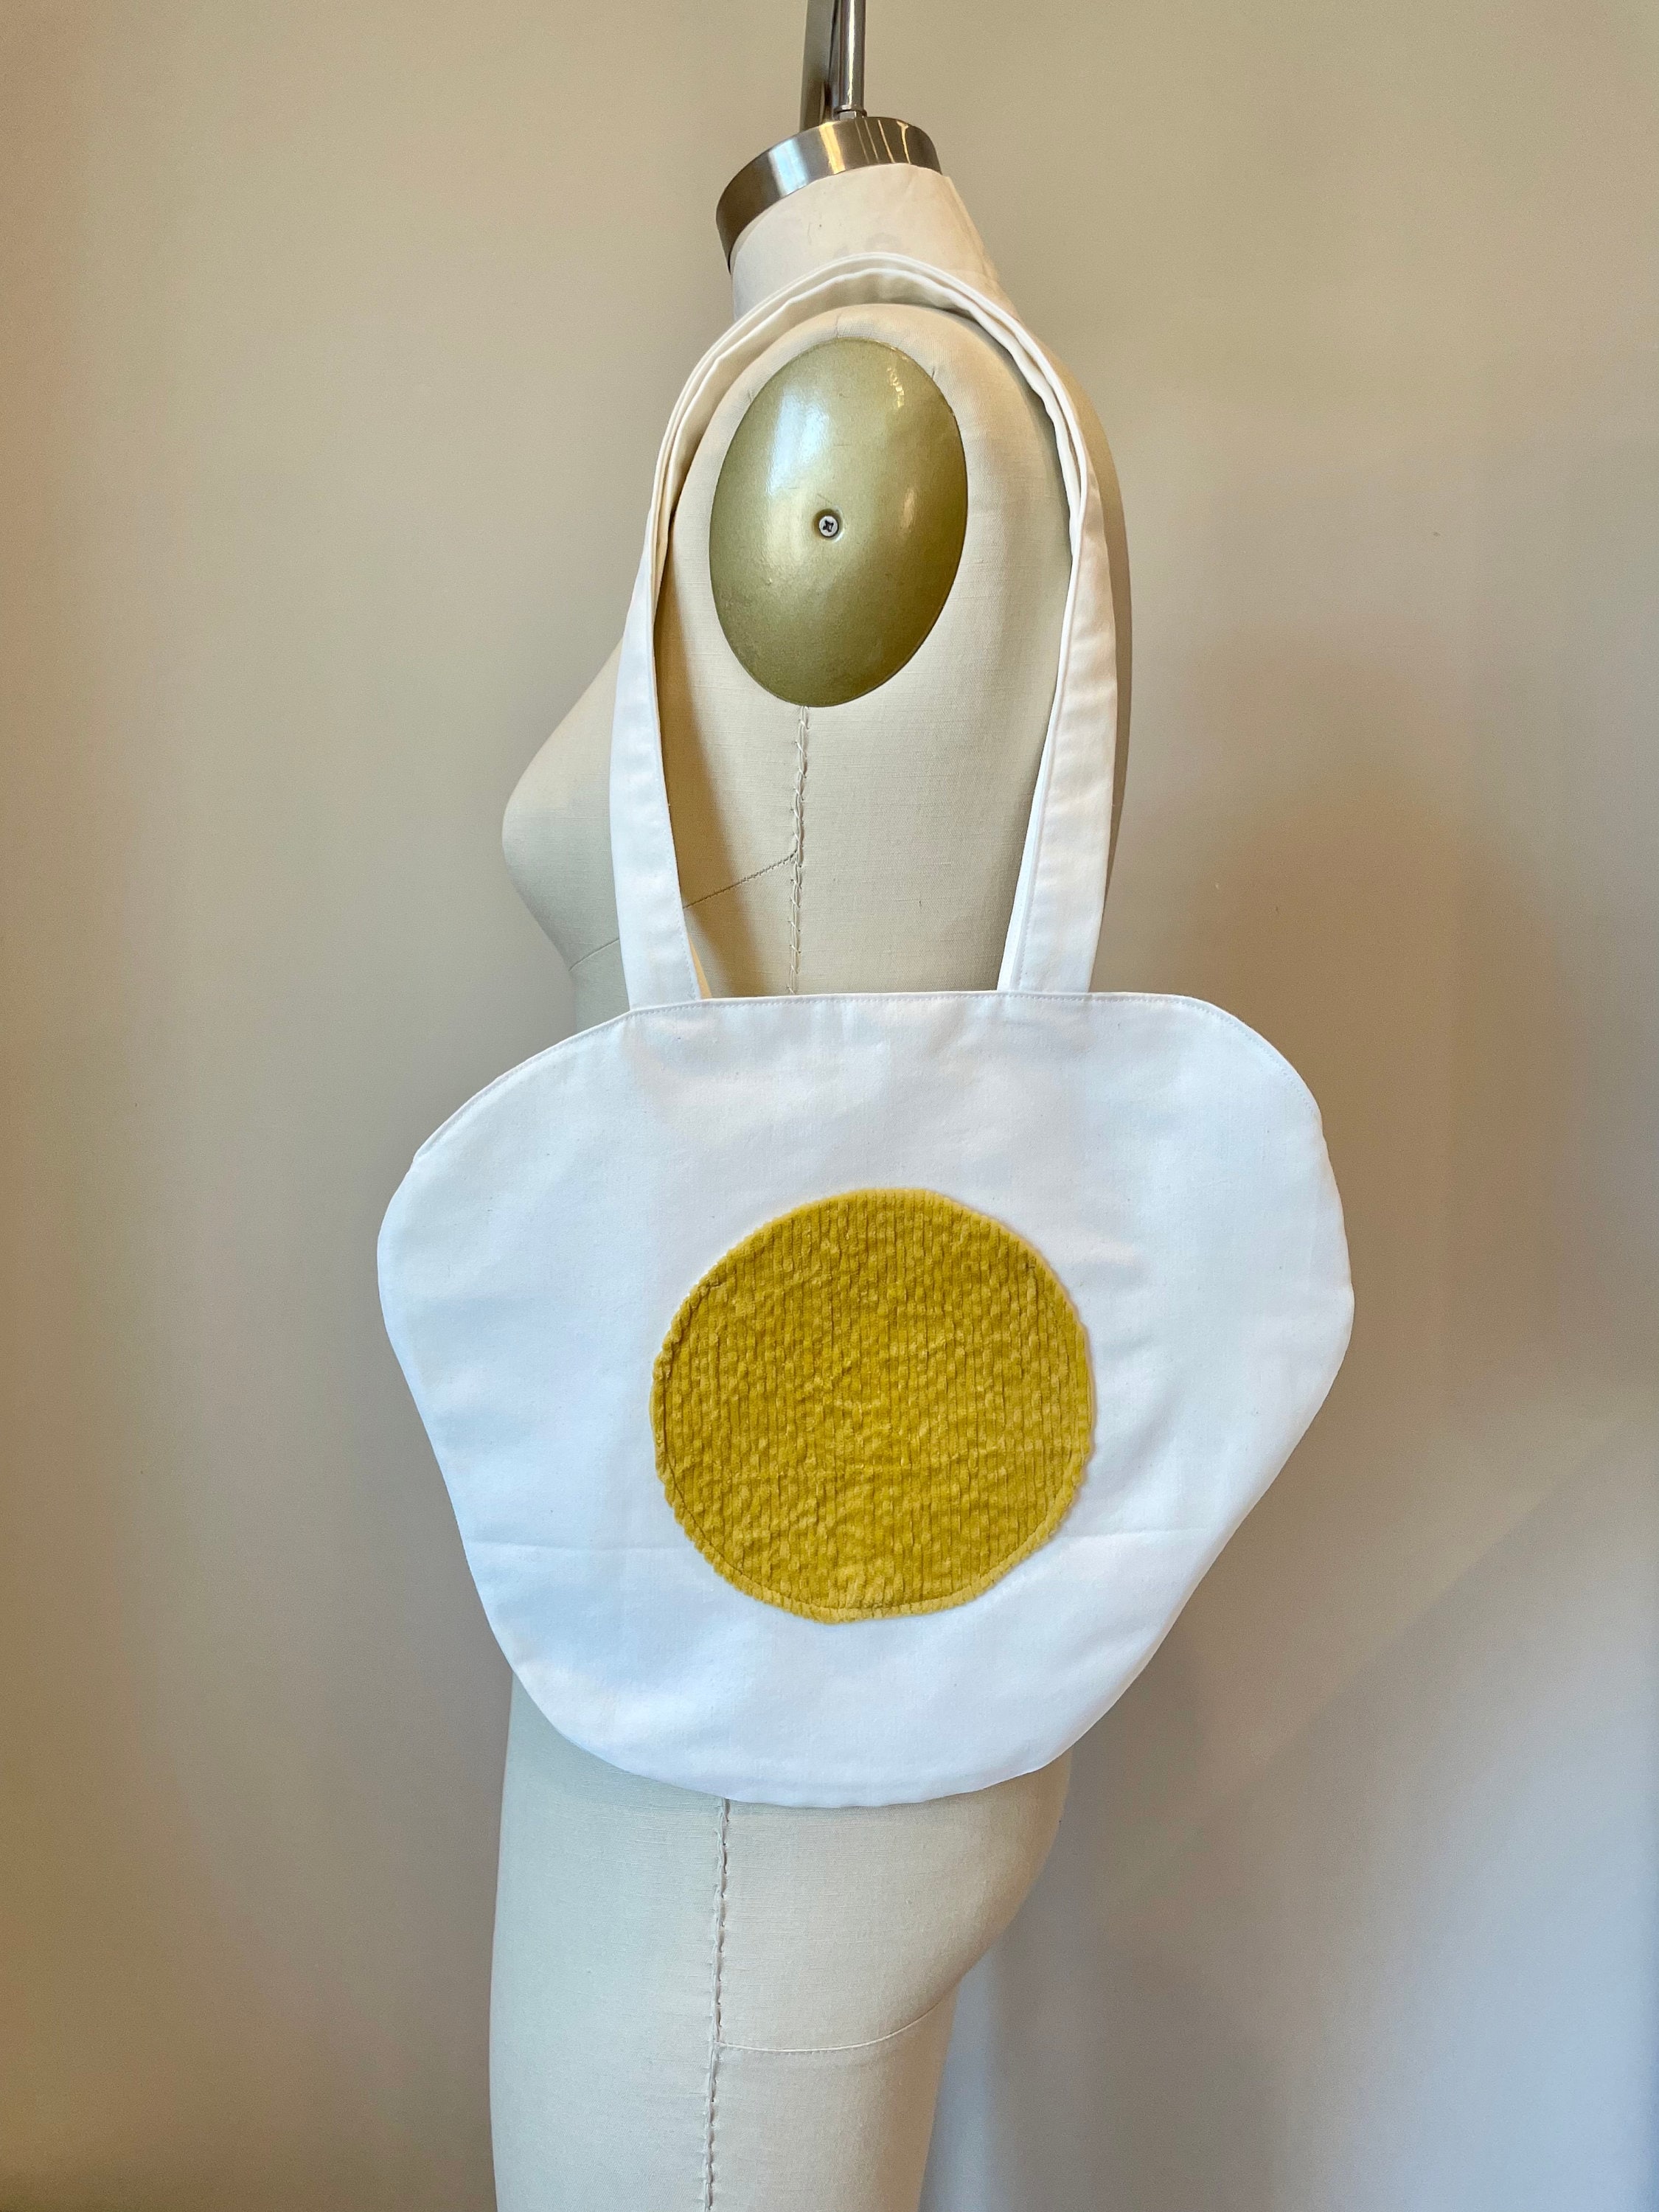 Fried egg Tote Bag by Sofia Youshi